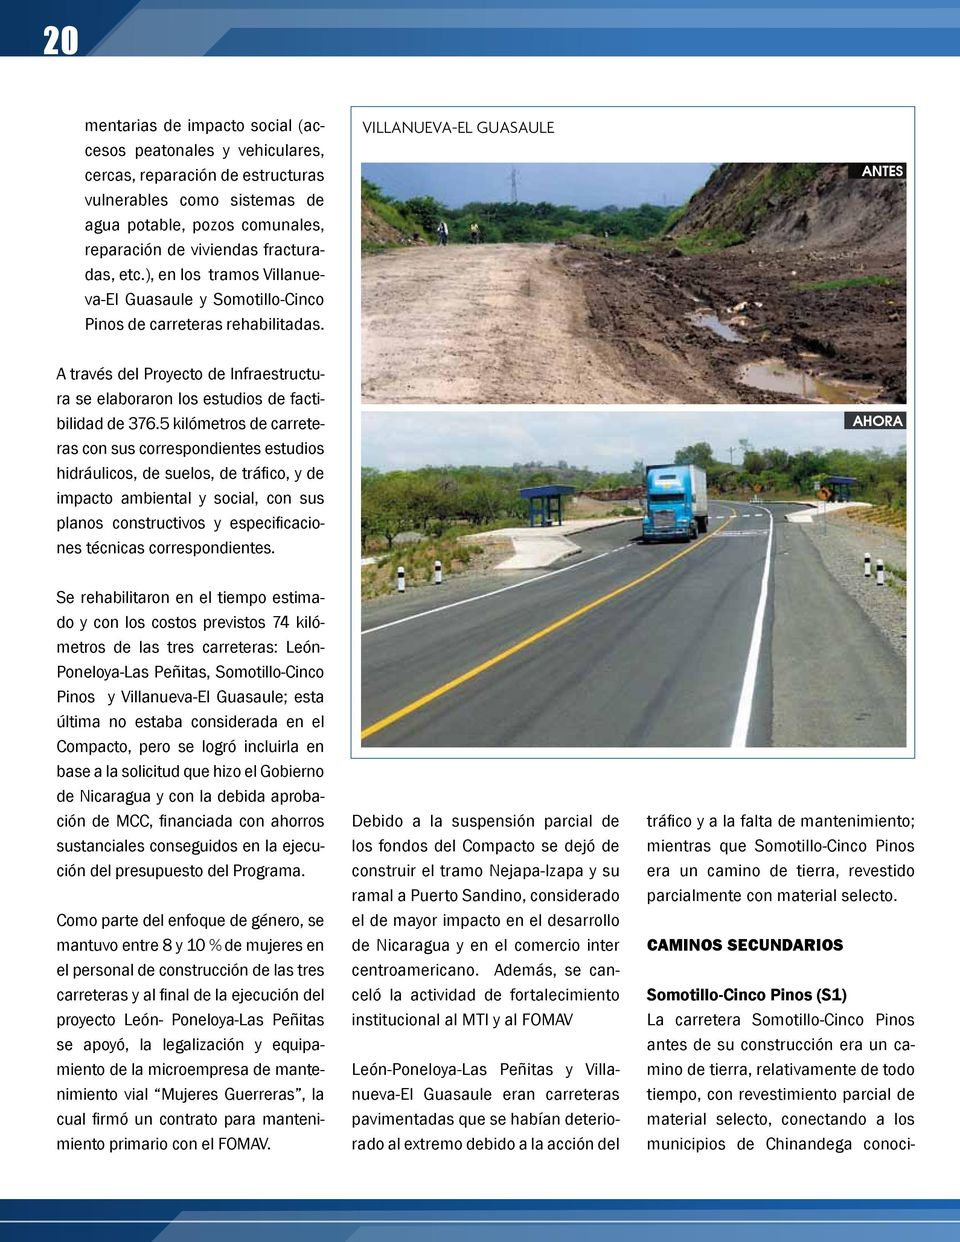 Villanueva-El Guasaule ANTES A través del Proyecto de Infraestructura se elaboraron los estudios de factibilidad de 376.